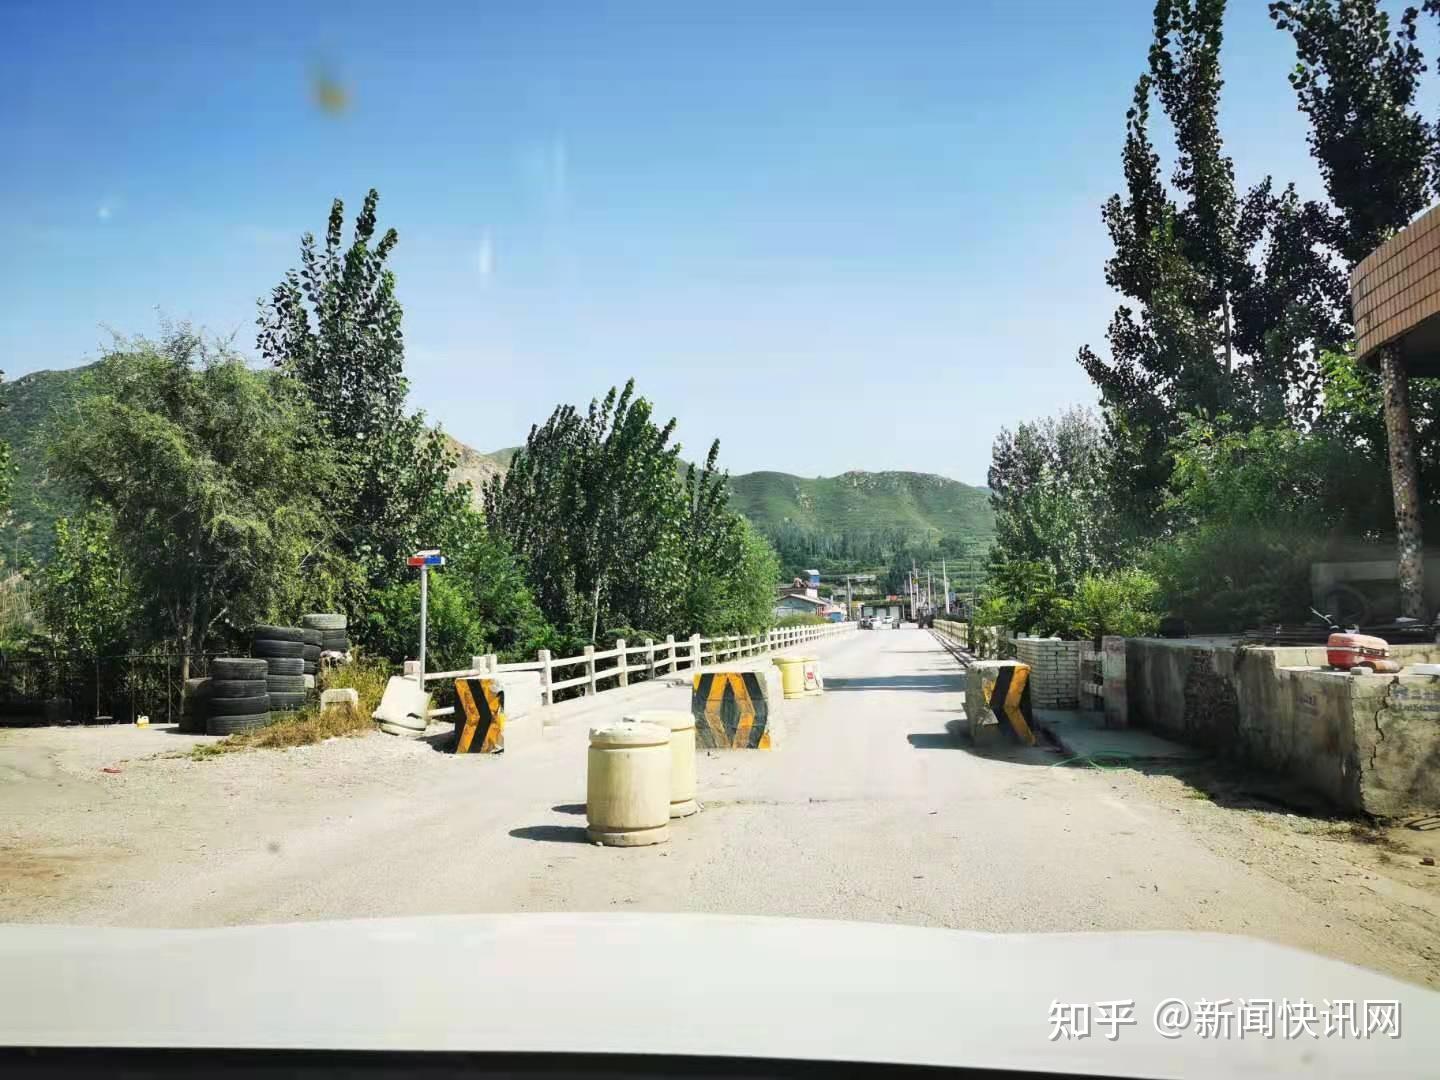 112国道上"卡脖子"的桥:河北省保定市涞源县王安镇马屯桥 啥时能修通?